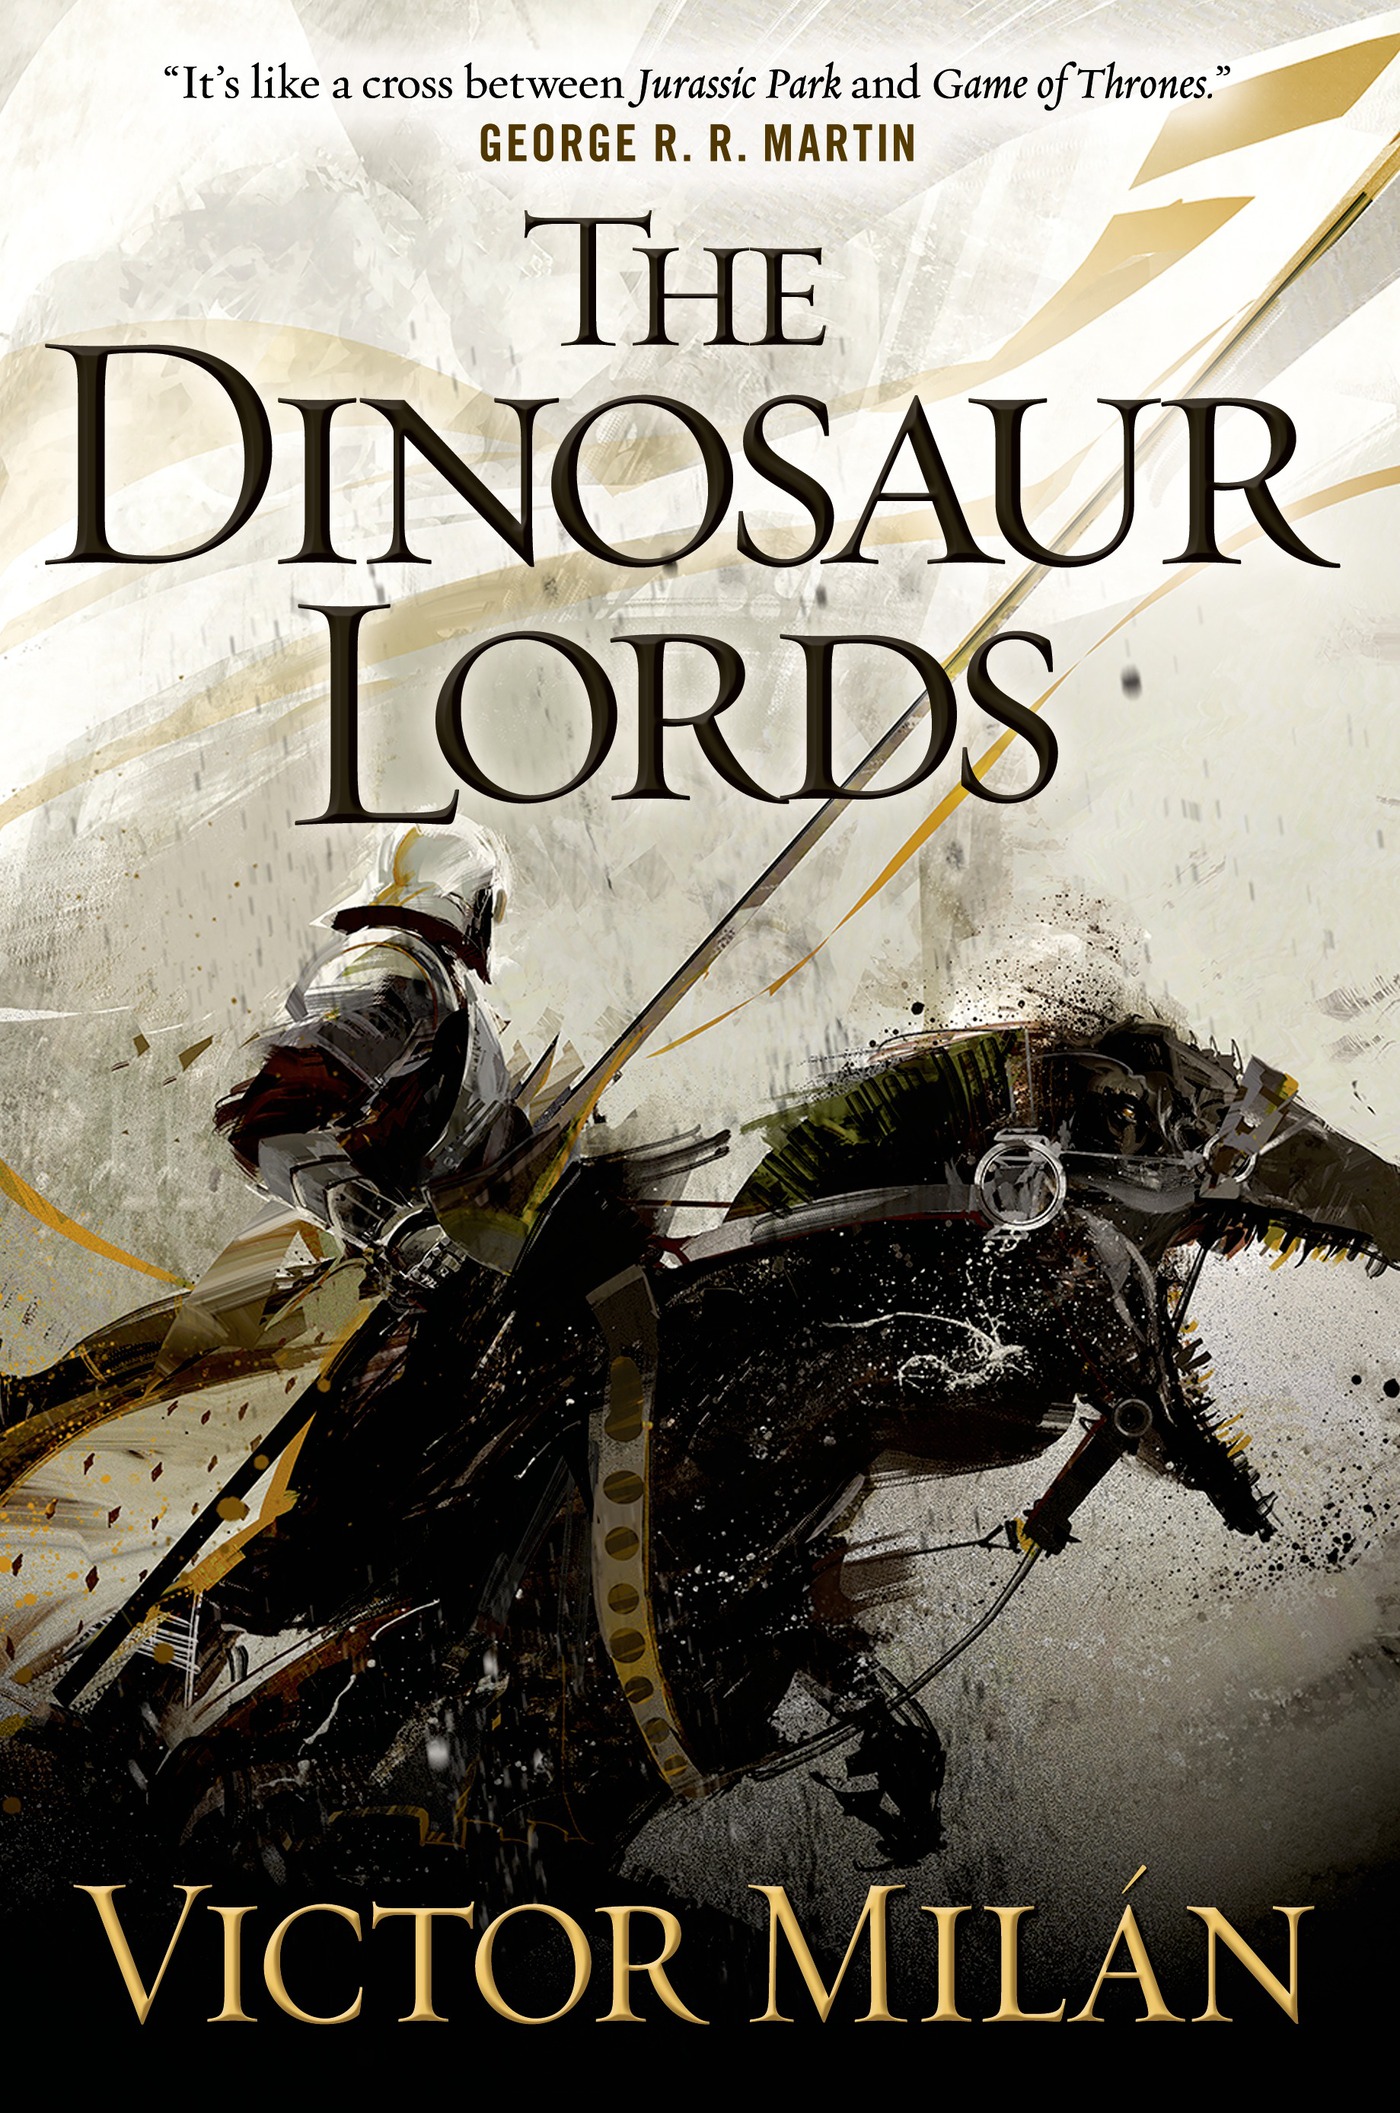 The Dinosaur Lords : A Novel by Victor Milán